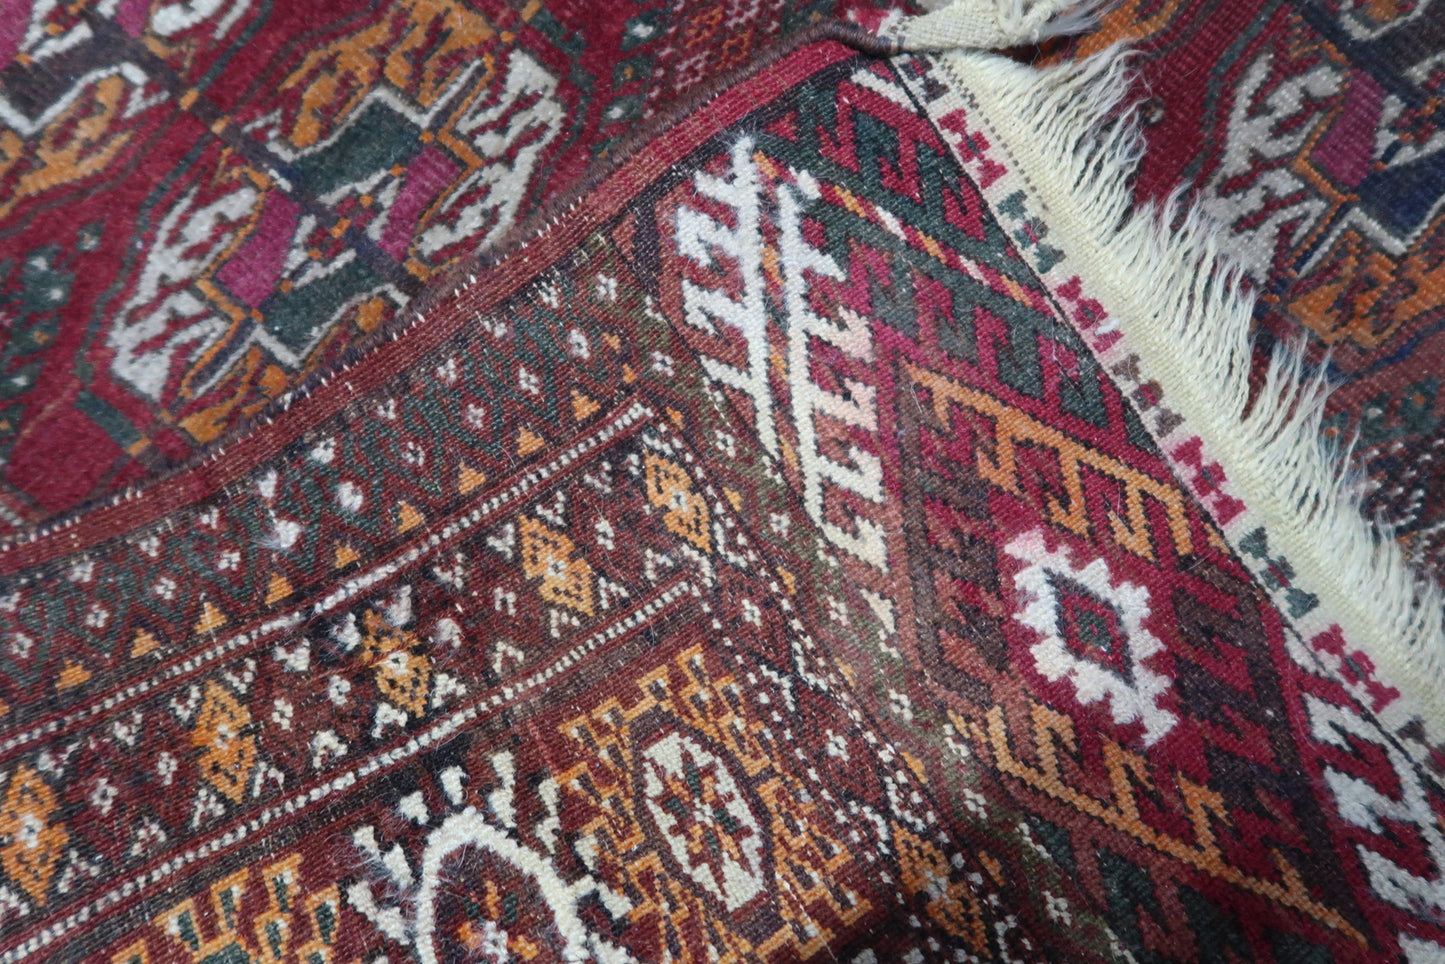 Back side of the Handmade Vintage Uzbek Bukhara Rug